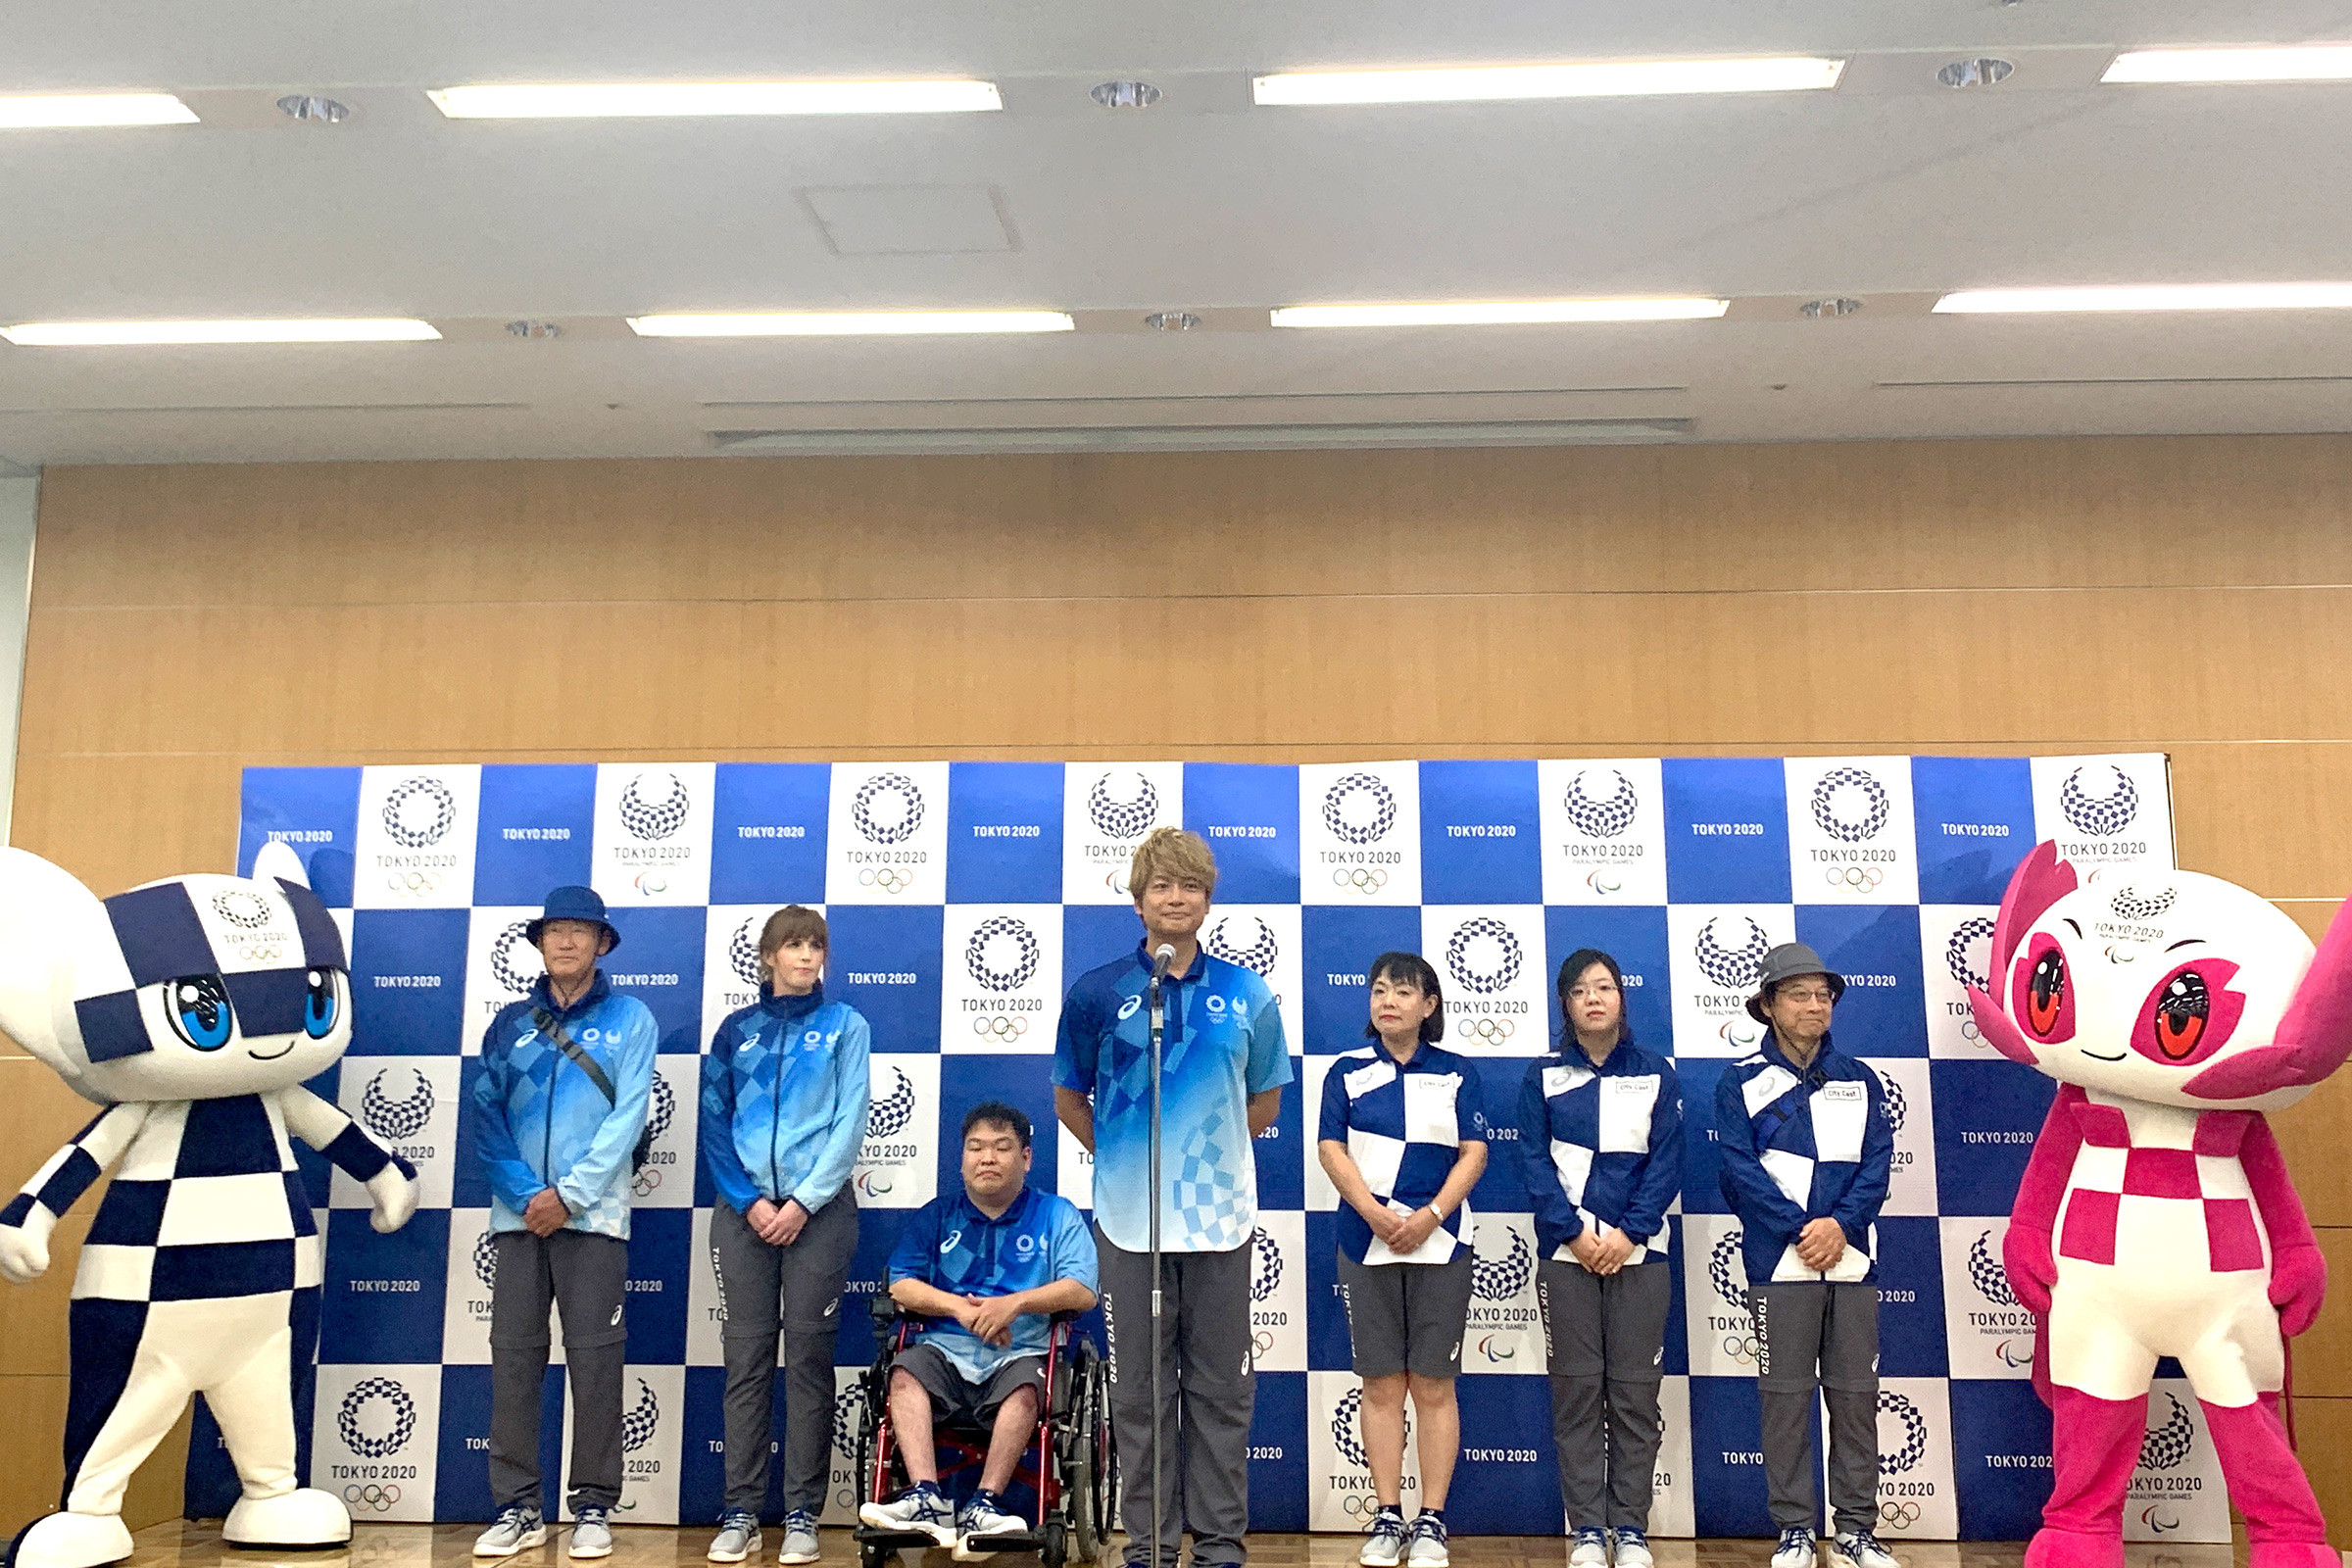 東京五輪スタッフとボランティアのユニフォーム公開、アシックスが